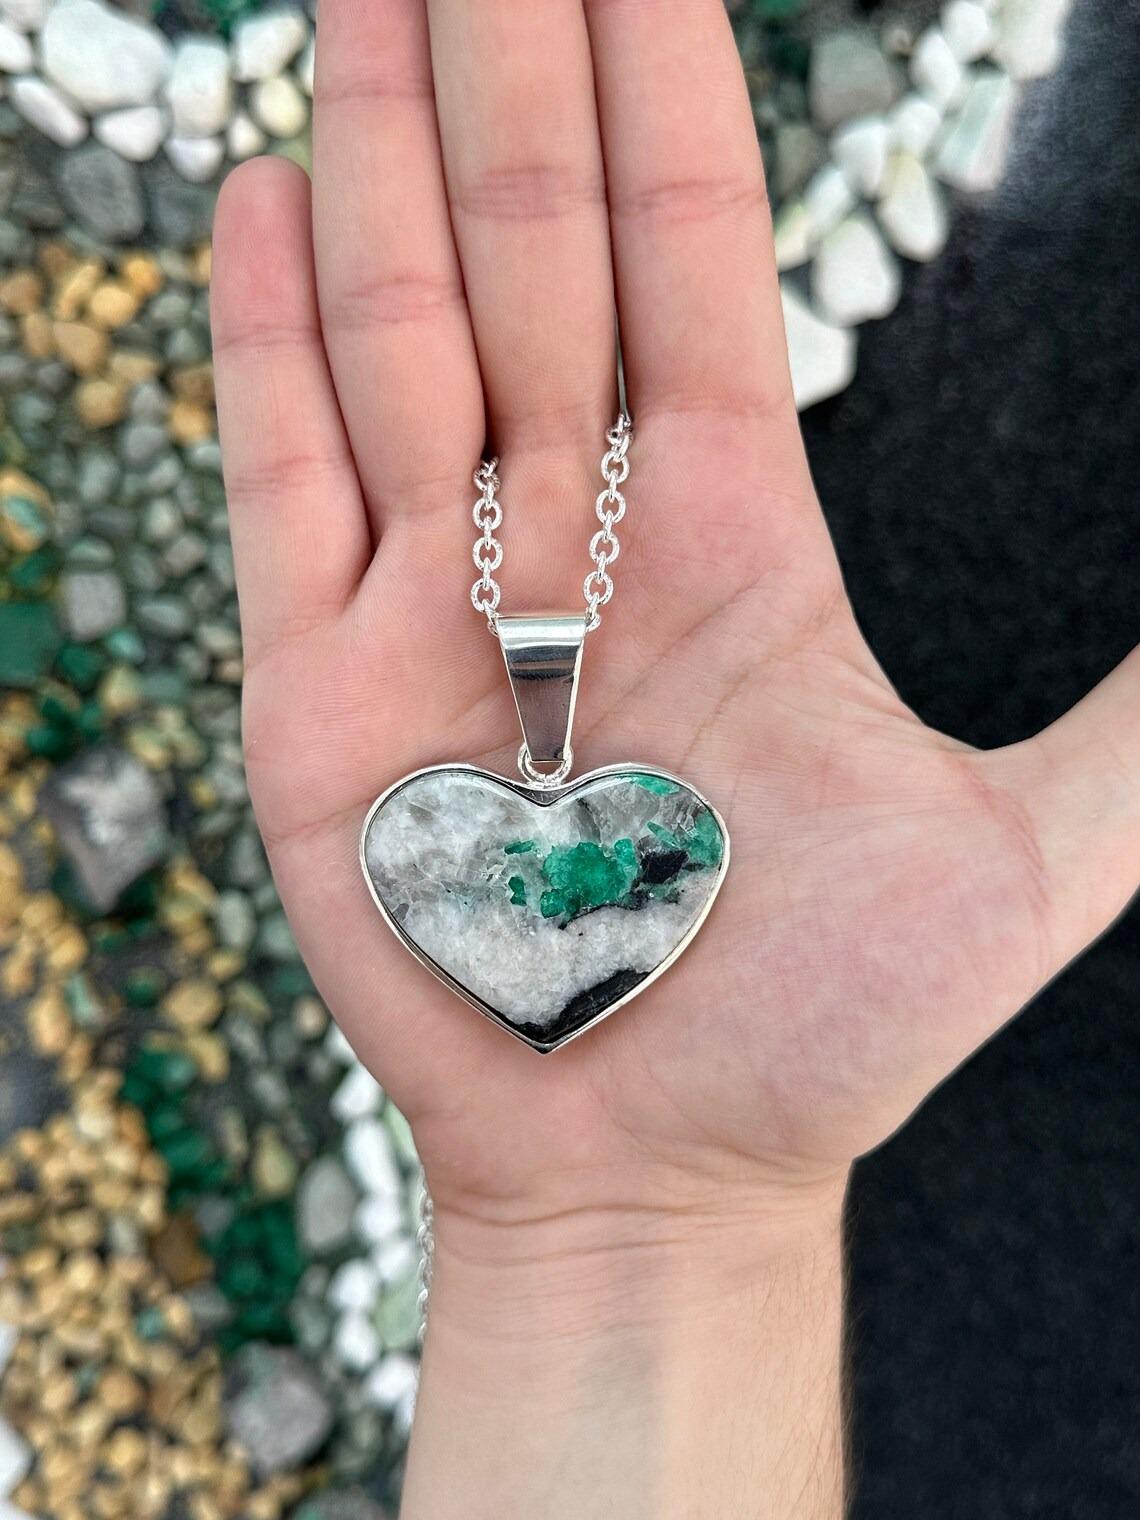 Emerald Cut Massive Colombian Emerald in Matrix Heart Pendant Bezel Set in Sterling Silver